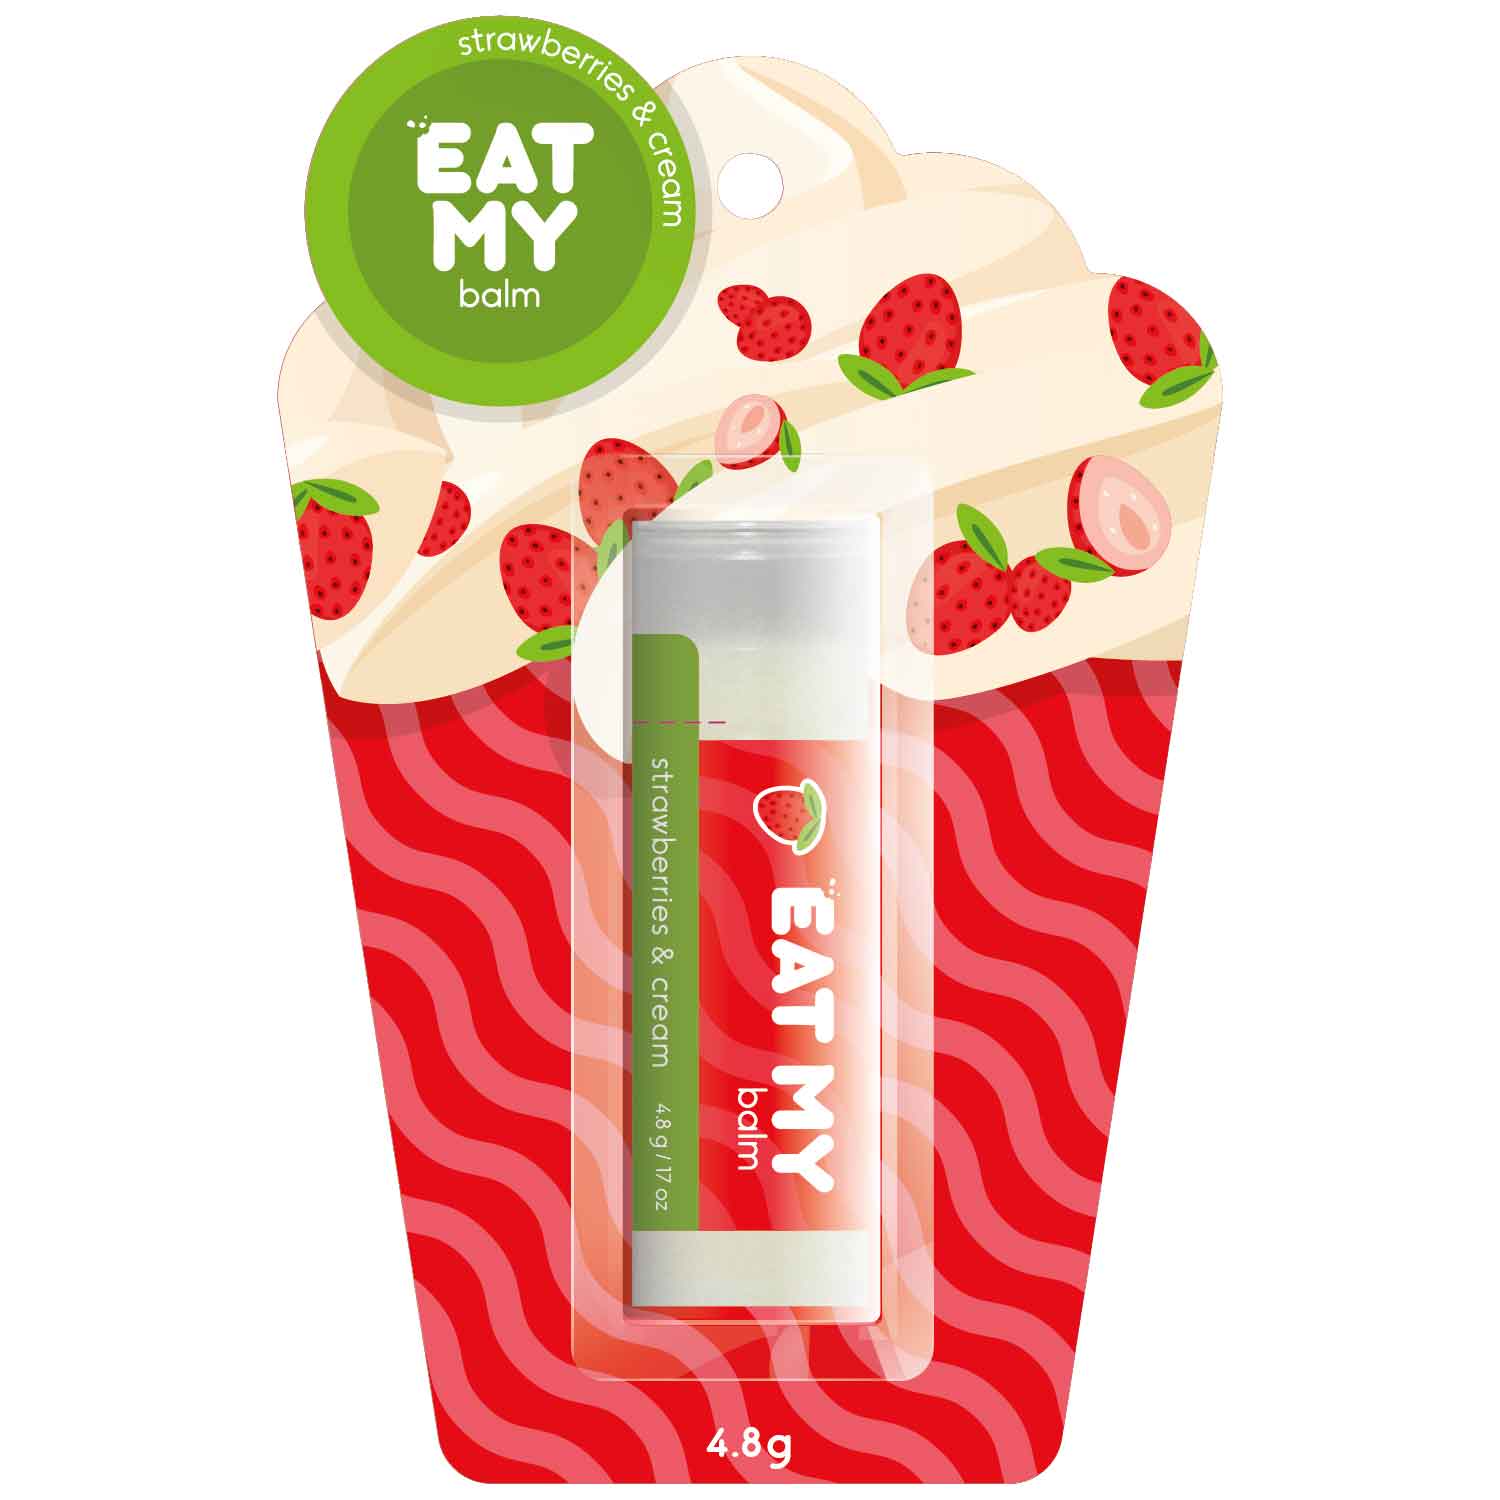 Eat My Бальзам для губ Земляника со сливками, 4,8 г (Eat My, Для губ) бальзам для губ eat my бальзам для губ земляника со сливками strawberries